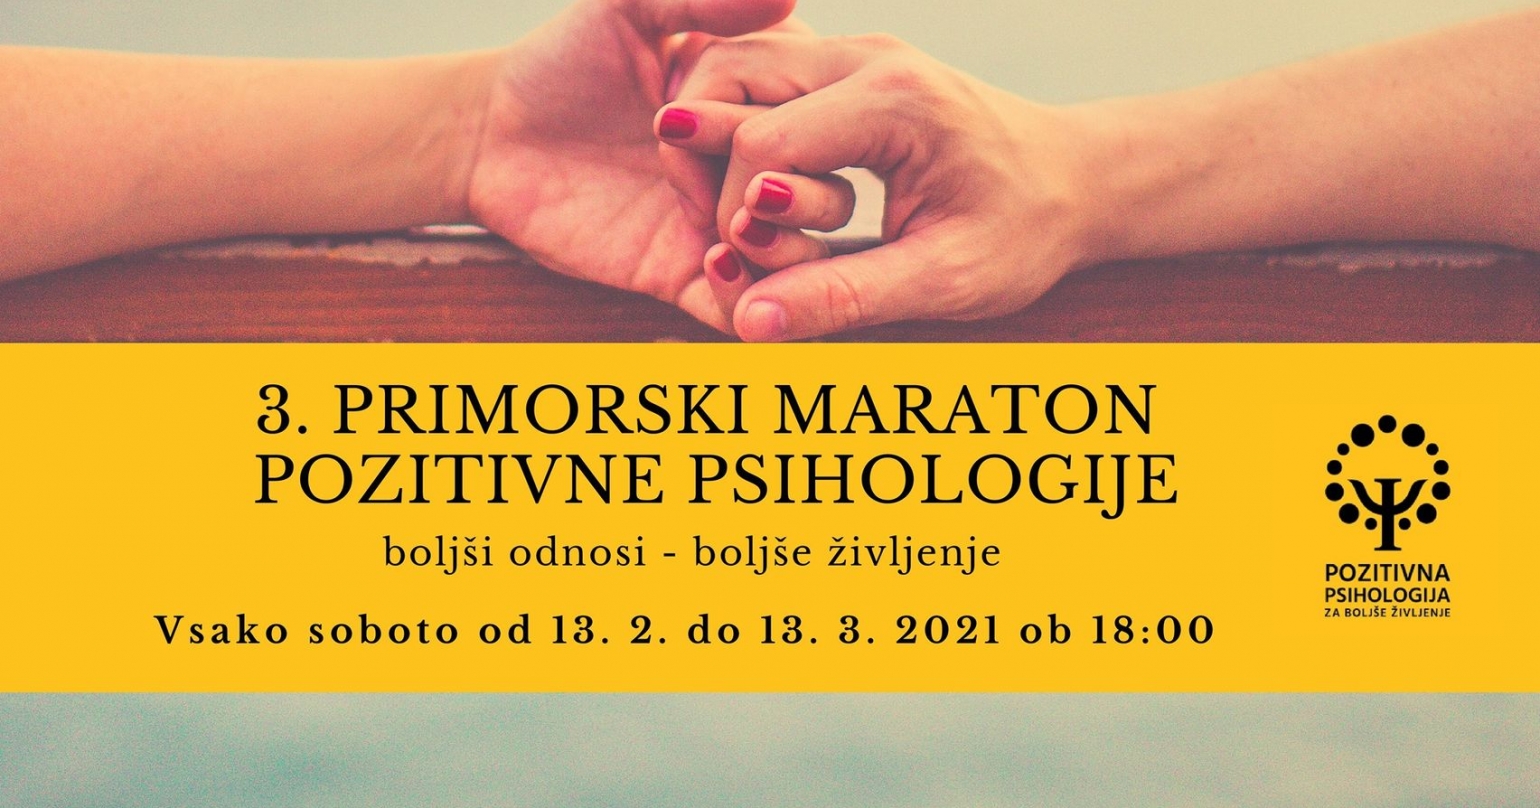 3. primorski maraton pozitivne psihologije: 13. 2. – 13. 3.!